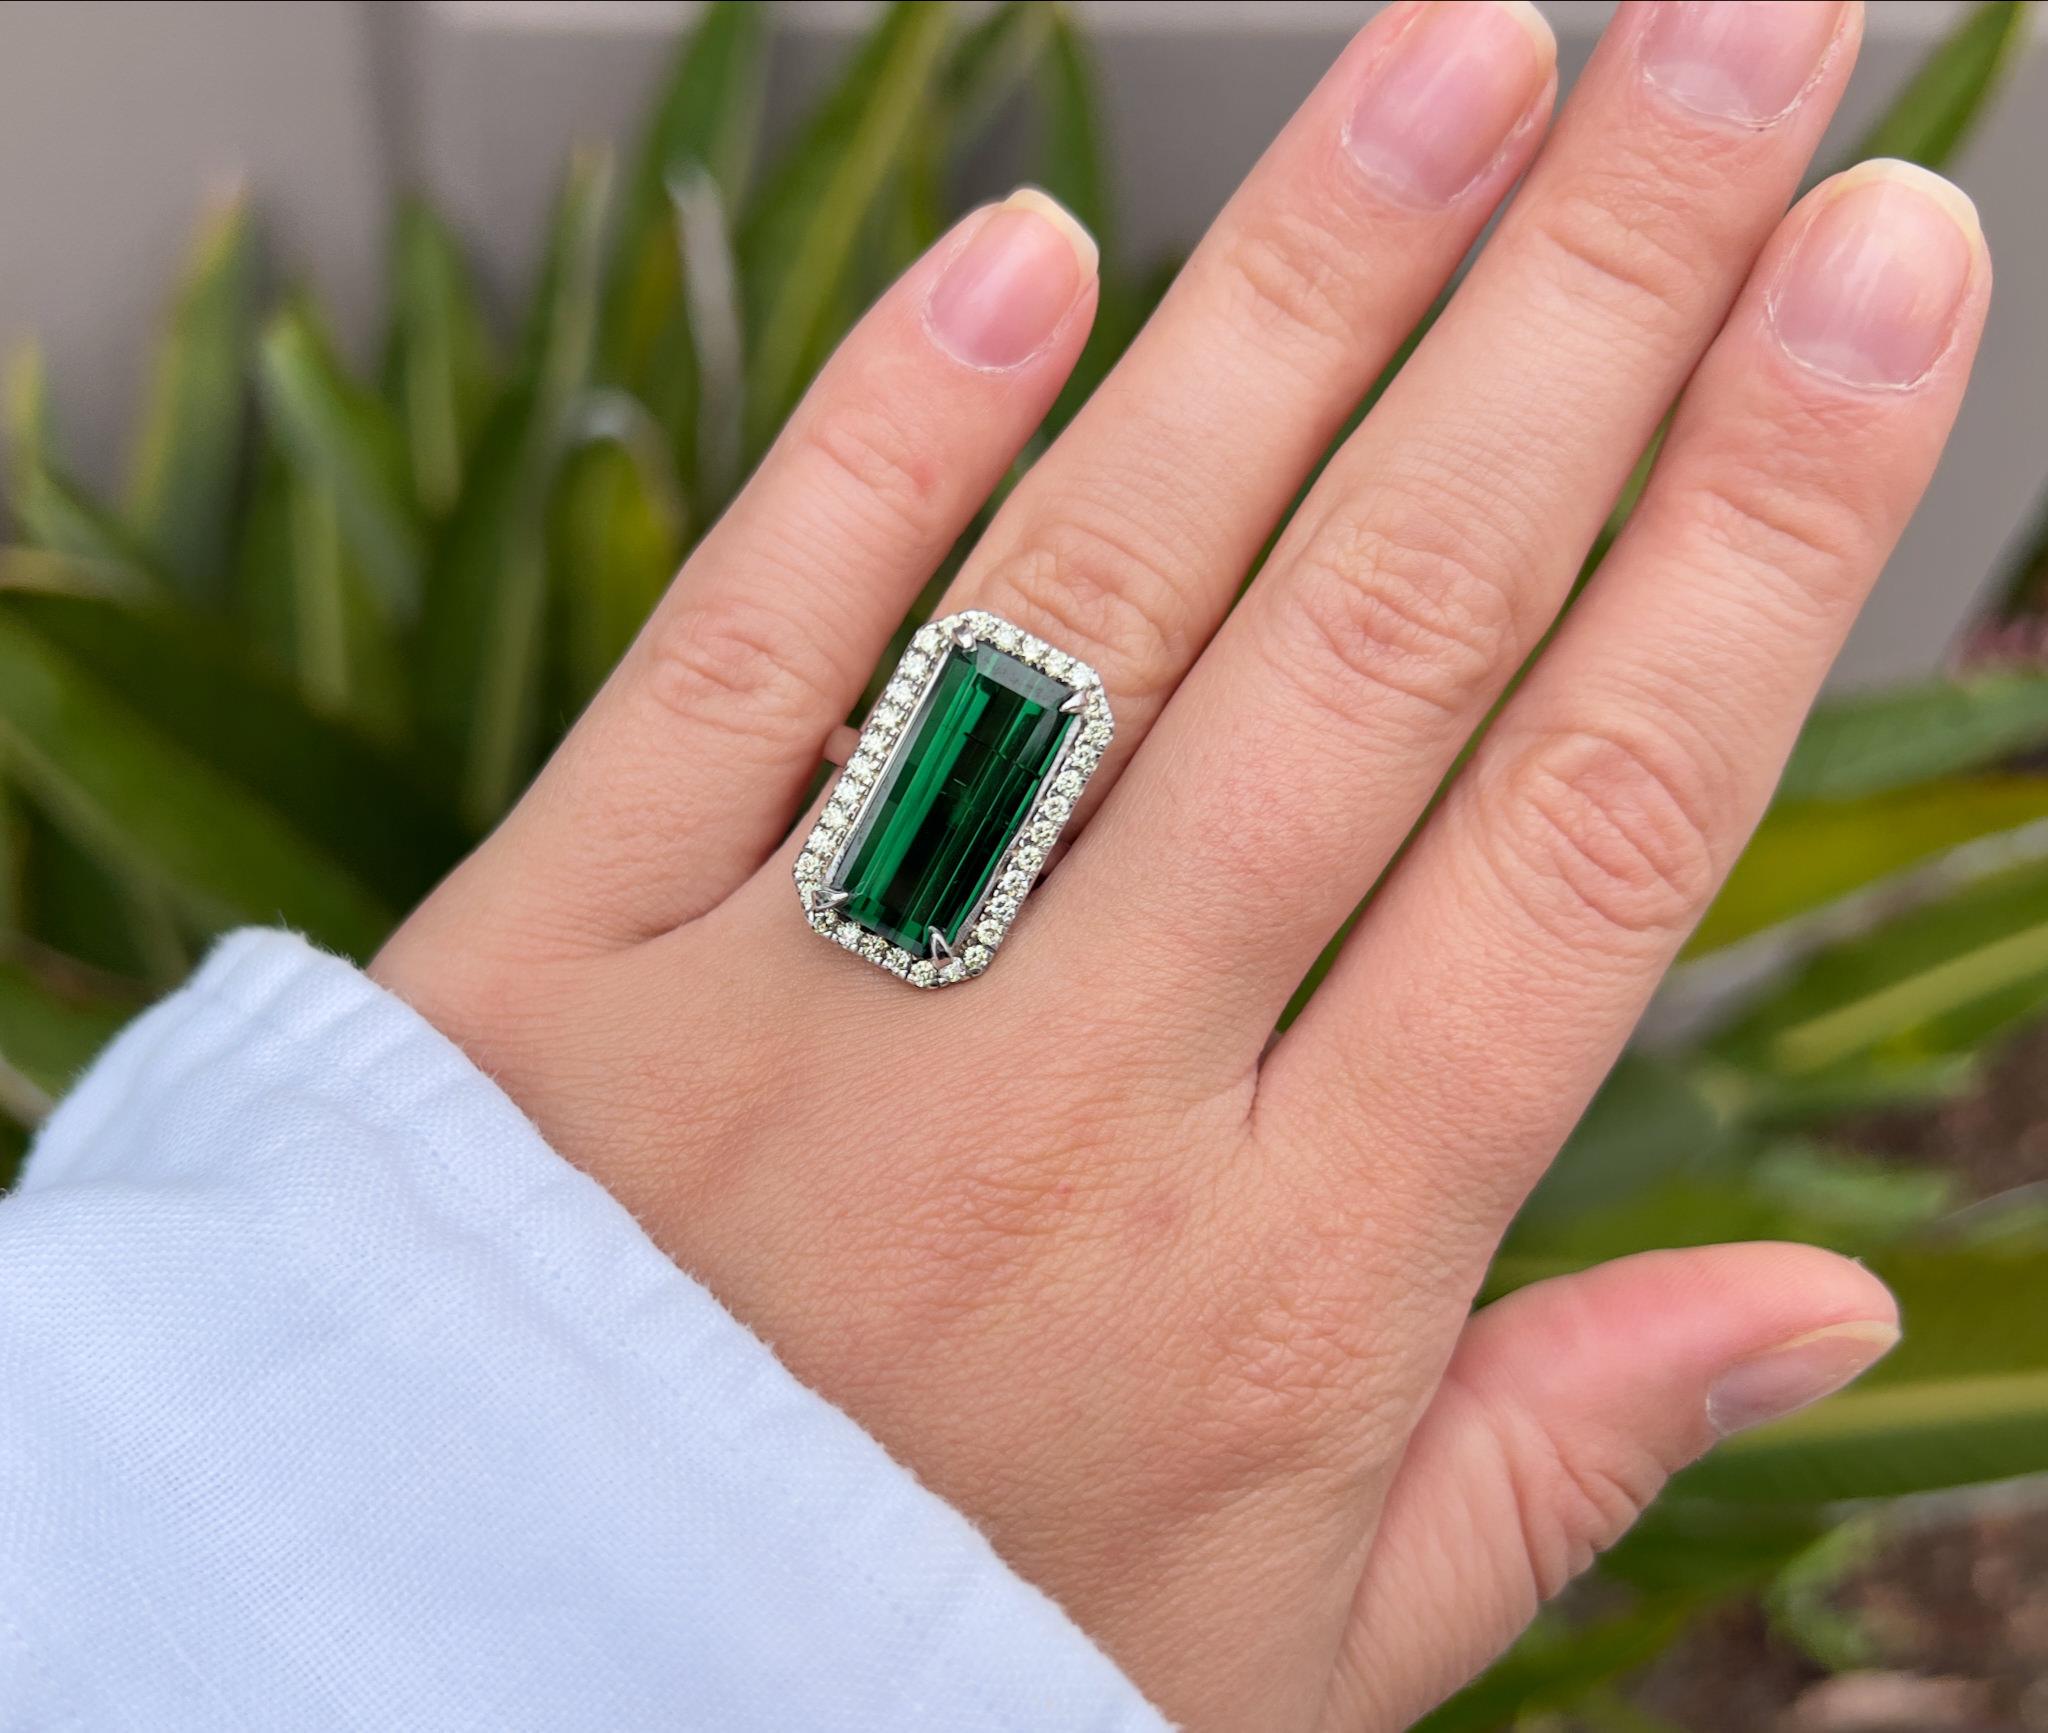 Grüner Turmalin = 8+ Karat
Schnitt: Baguette
Diamanten = 0,60 Karat
( Farbe: F, Reinheit: VS )
Metall: 18K Gold
*Die Größe kann kostenlos geändert werden.